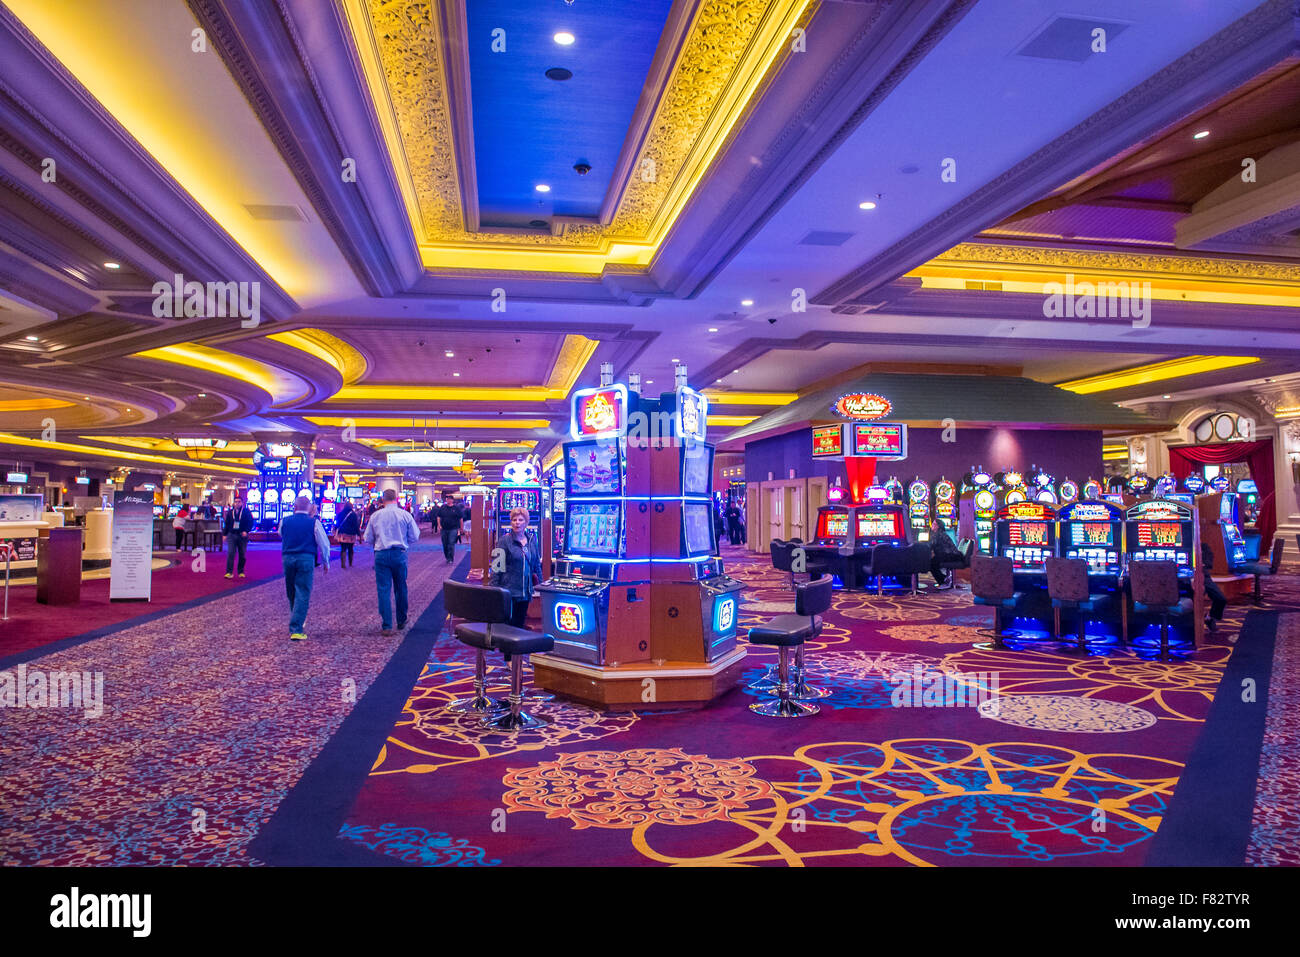 Mandalay Bay Resort And Casino in Las Vegas